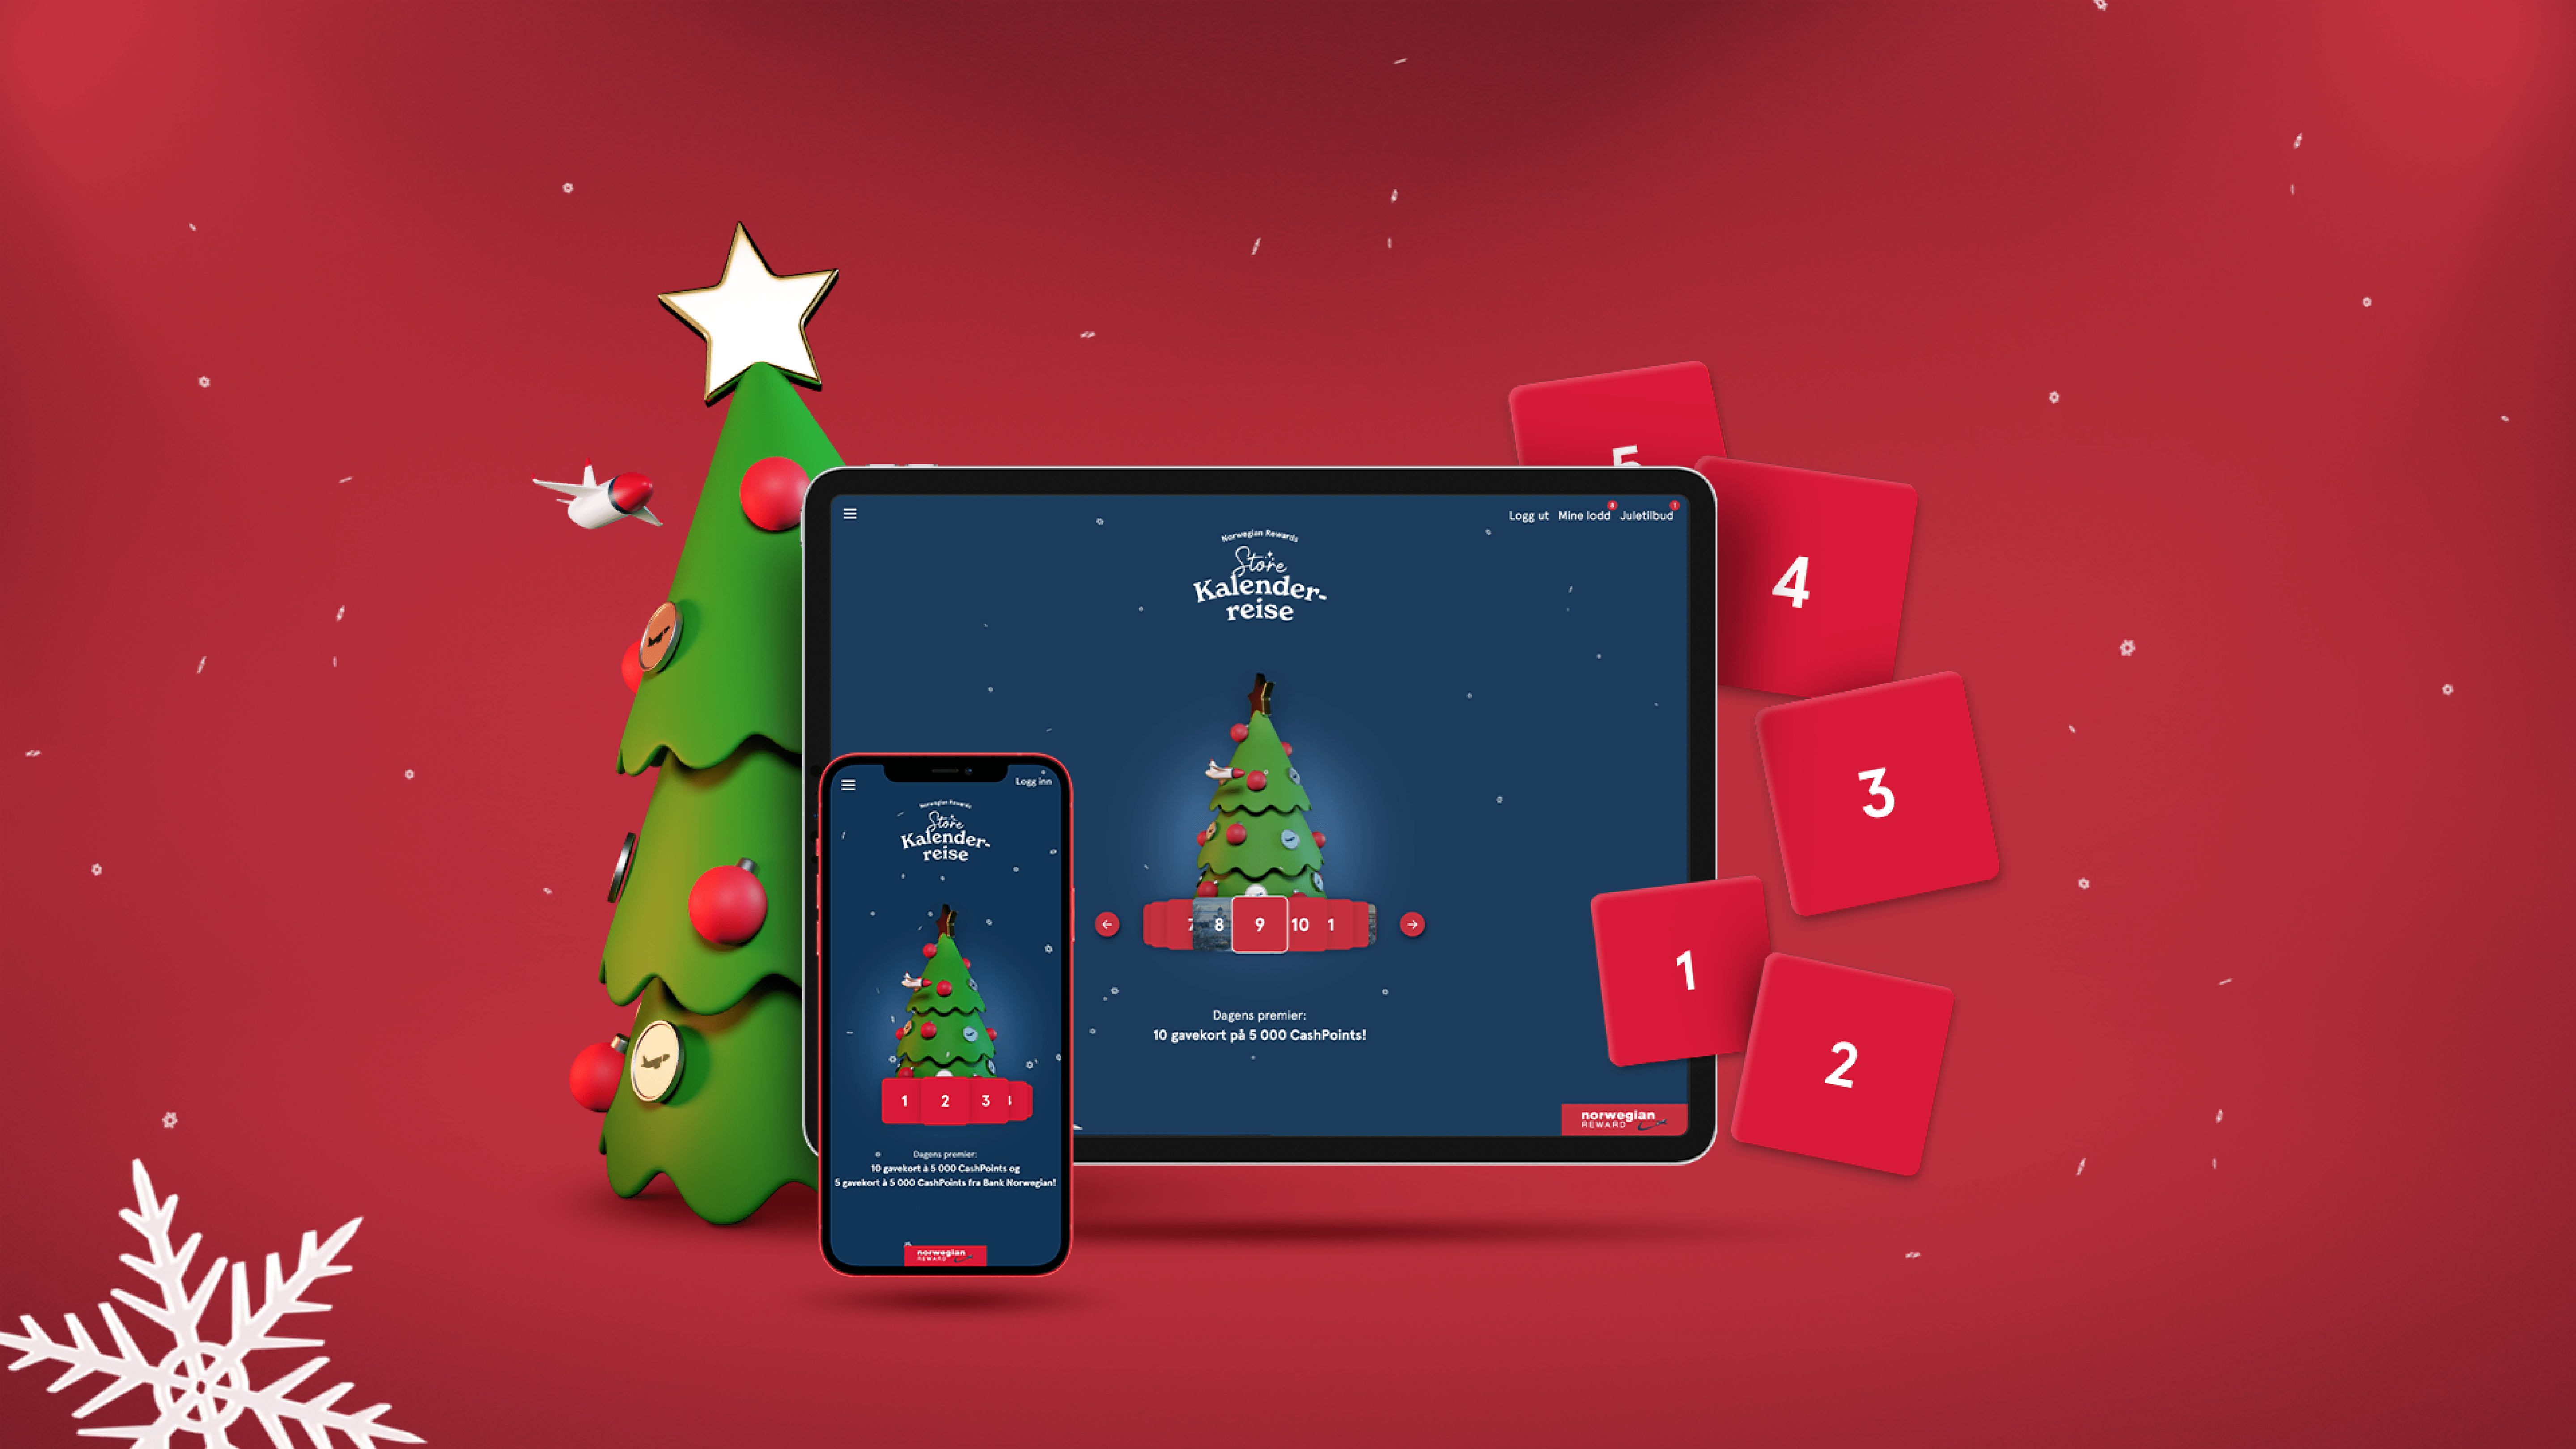 Norwegian Reward har i en årrekke tilbudt en svært populær julekalender i adventstida. TRY har hjulpet dem med å fornye kalenderen. 